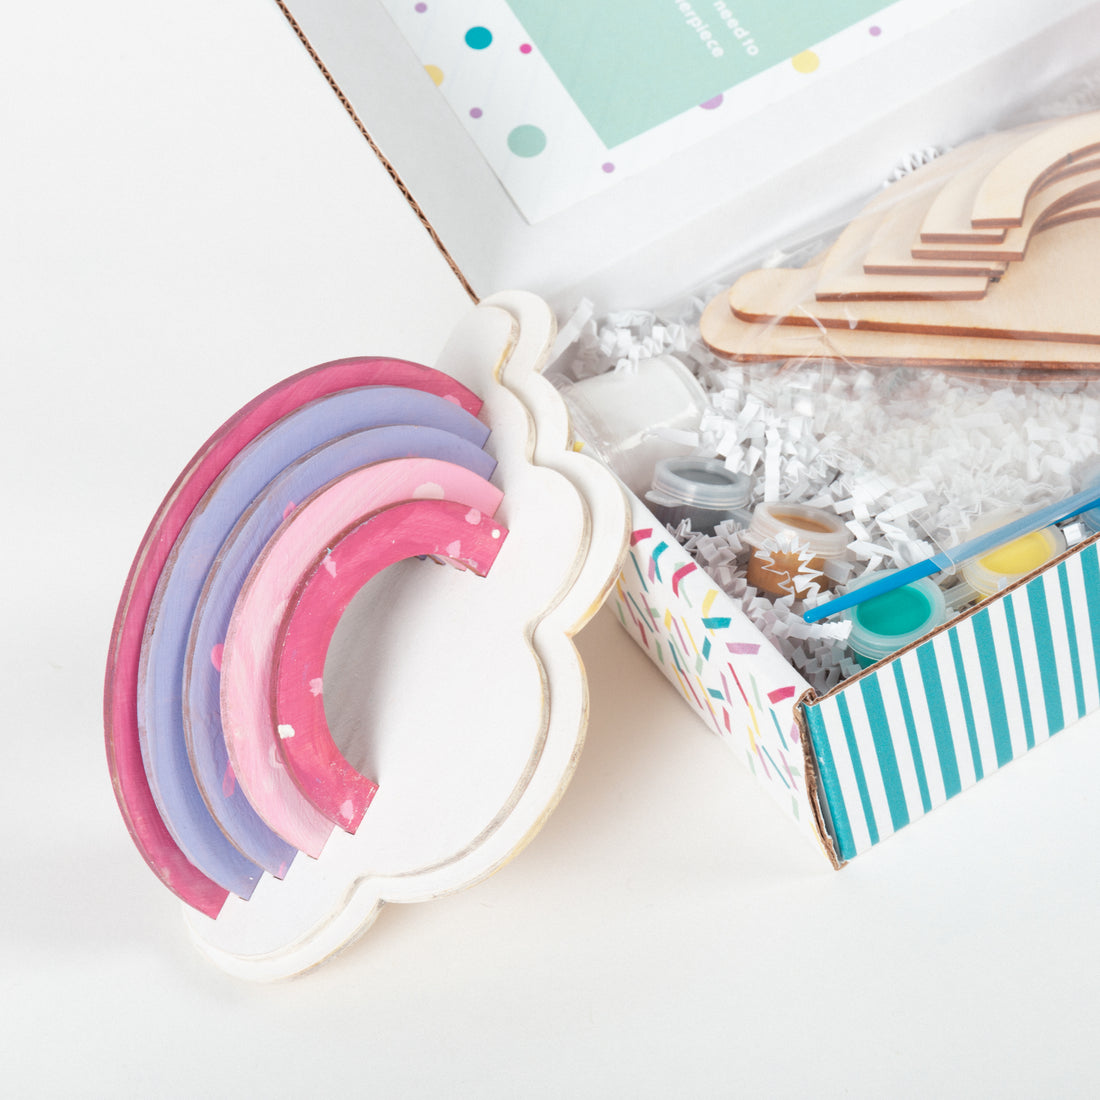 3D Cloud & Rainbow Arch Paint Kit